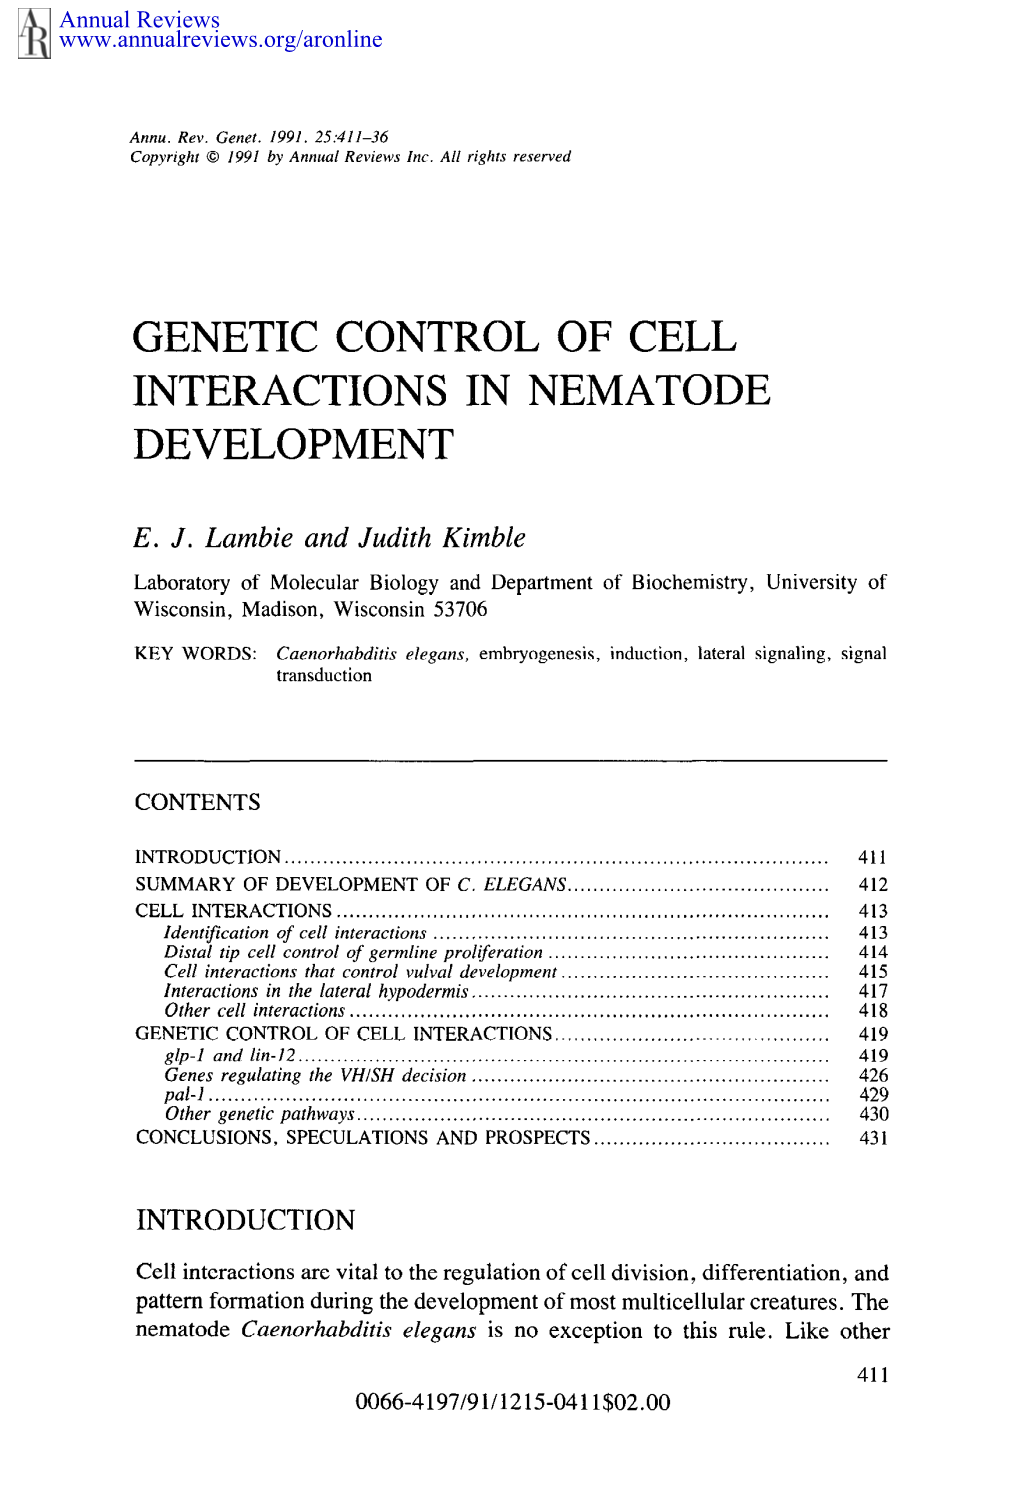 Genetic Control of Cell Interactions in Nematode Development